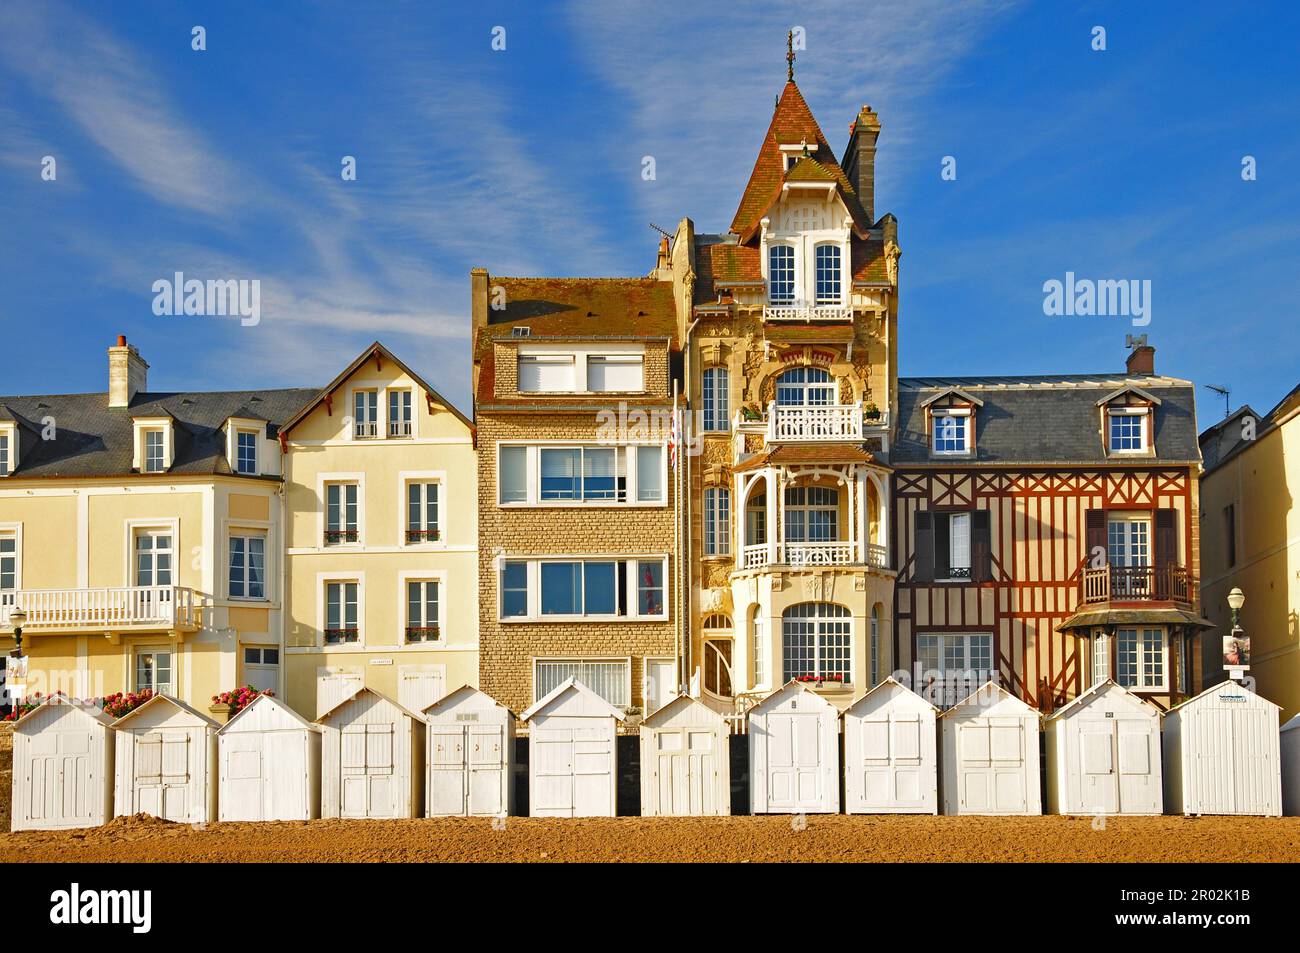 Promenade de plage de Saint-Aubin-sur-Mer dans le département du Calvados, Normandie, France Banque D'Images